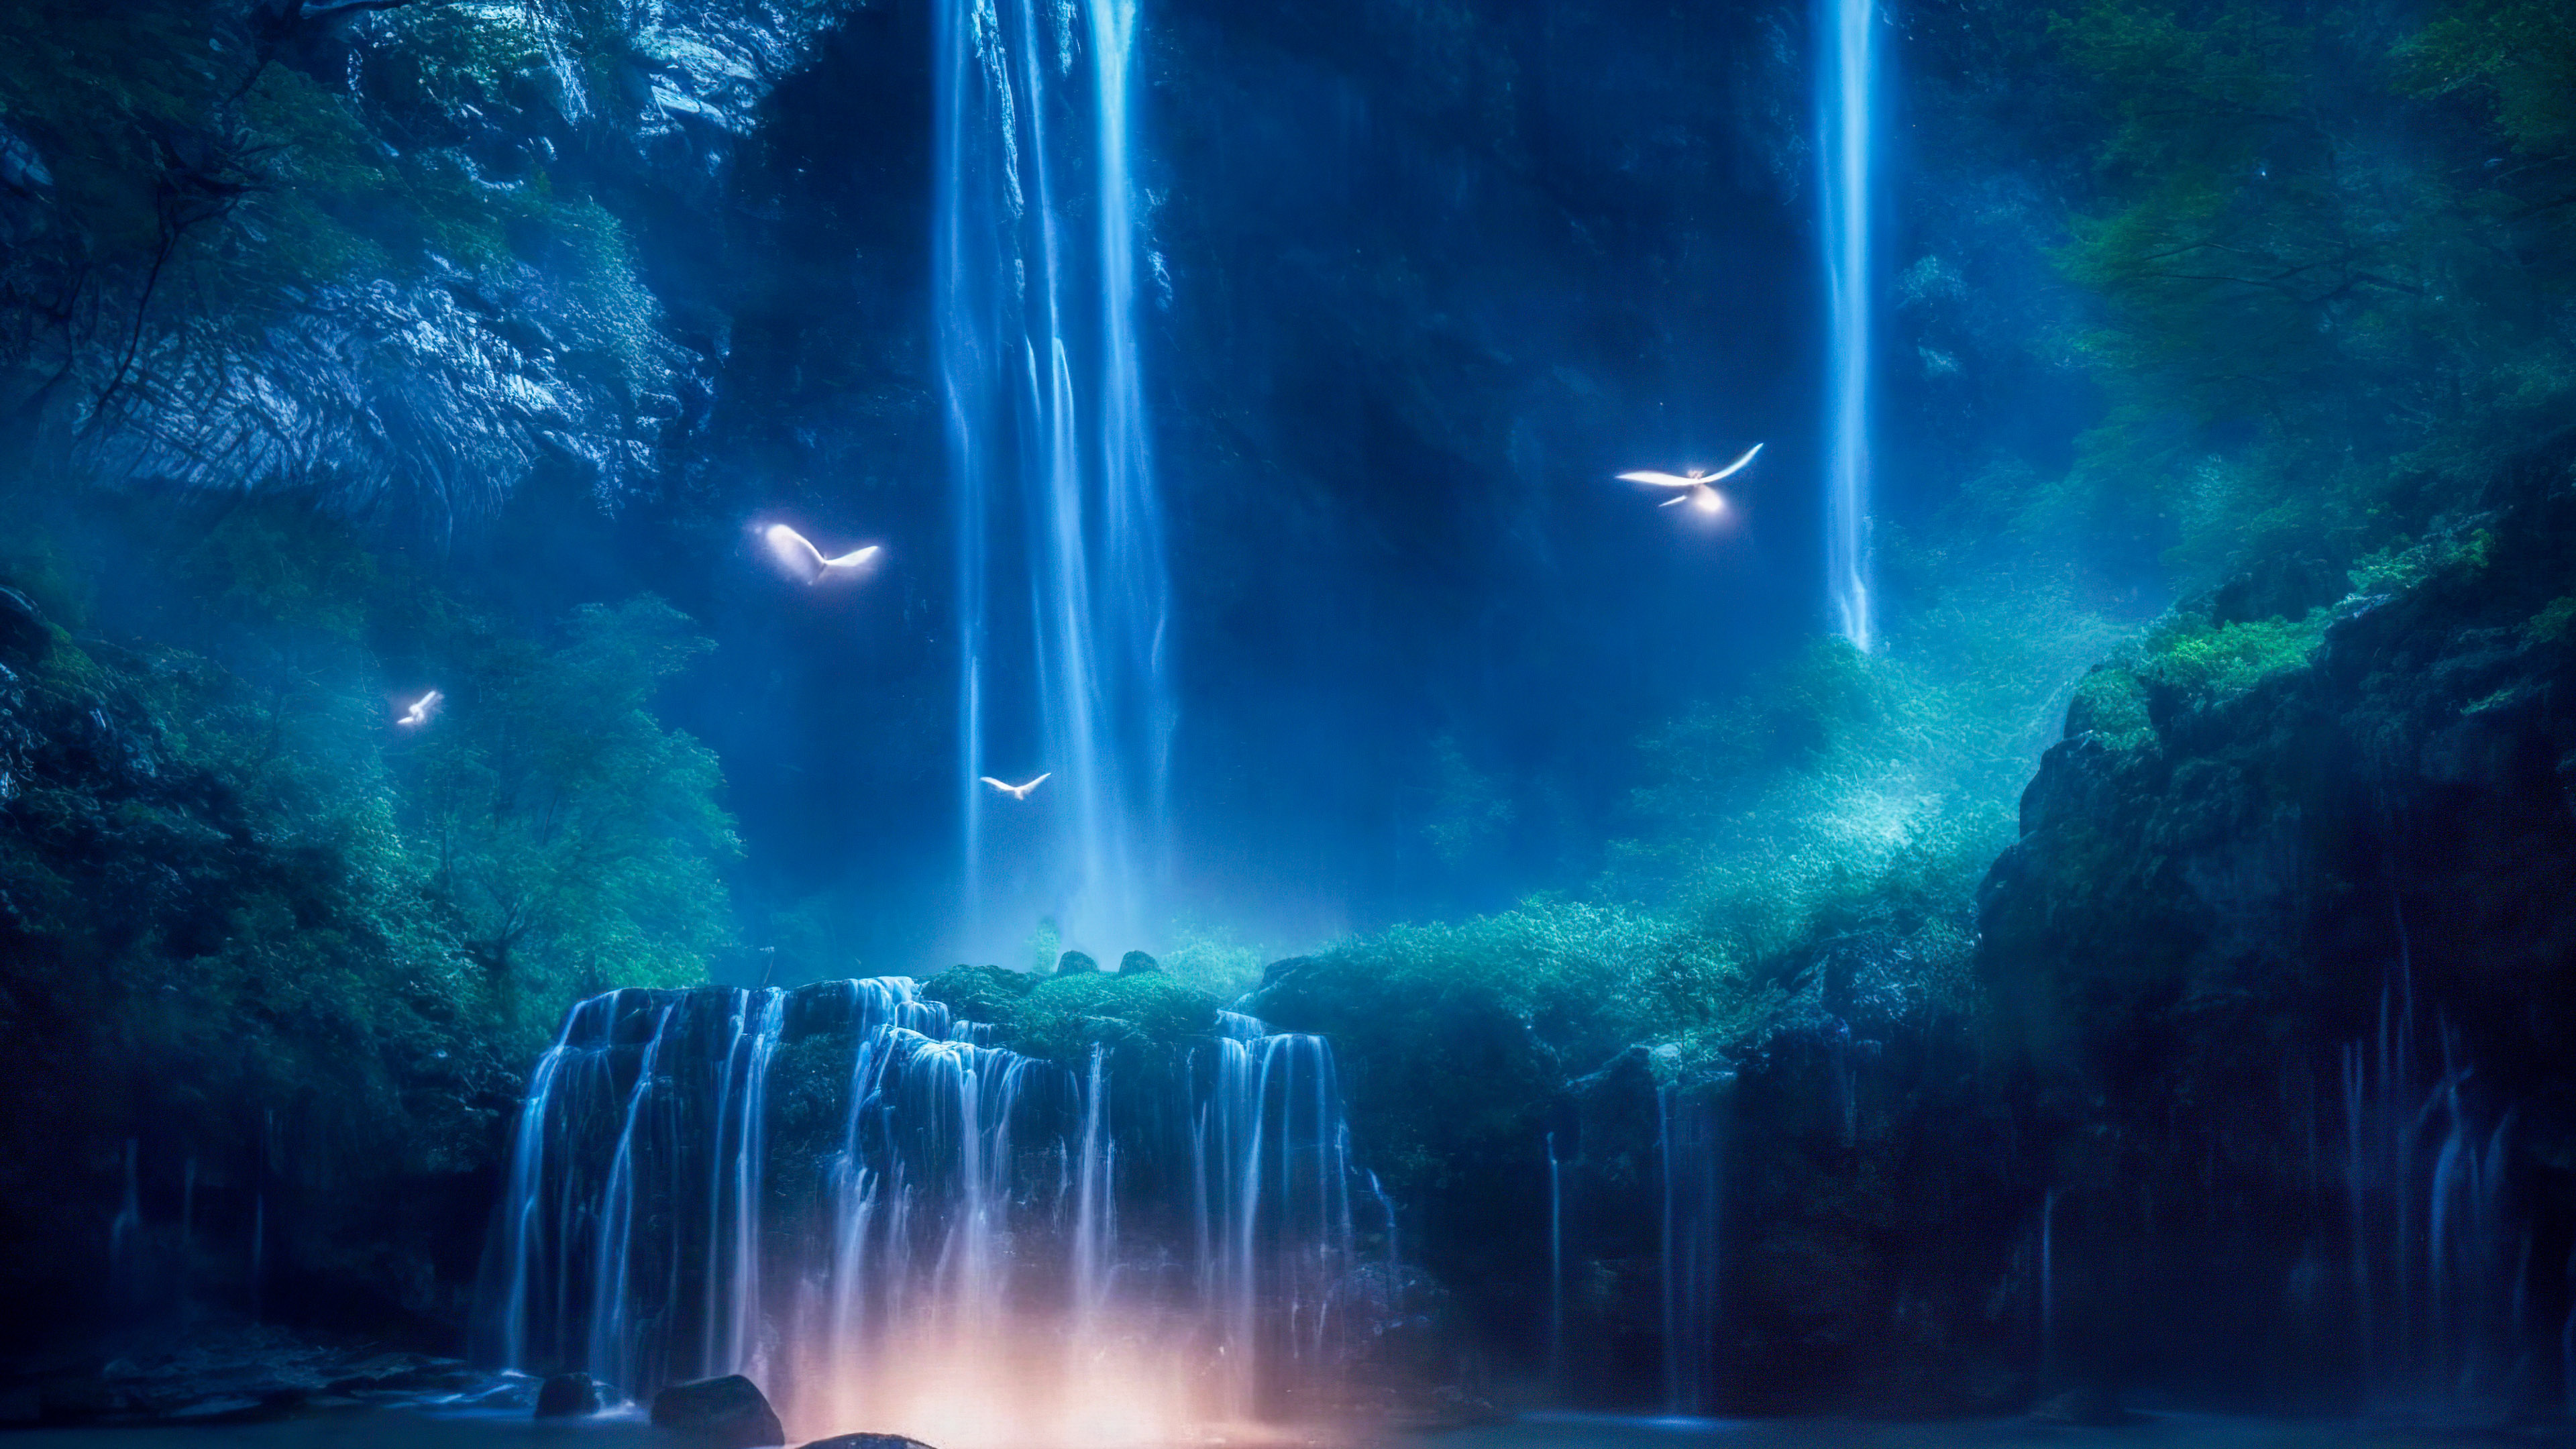 Vivez l'enchantement d'une cascade magique illuminée par le clair de lune, avec des lucioles dansant autour de ses eaux en cascade, grâce à notre fond d'écran nature en 4K pour votre PC.